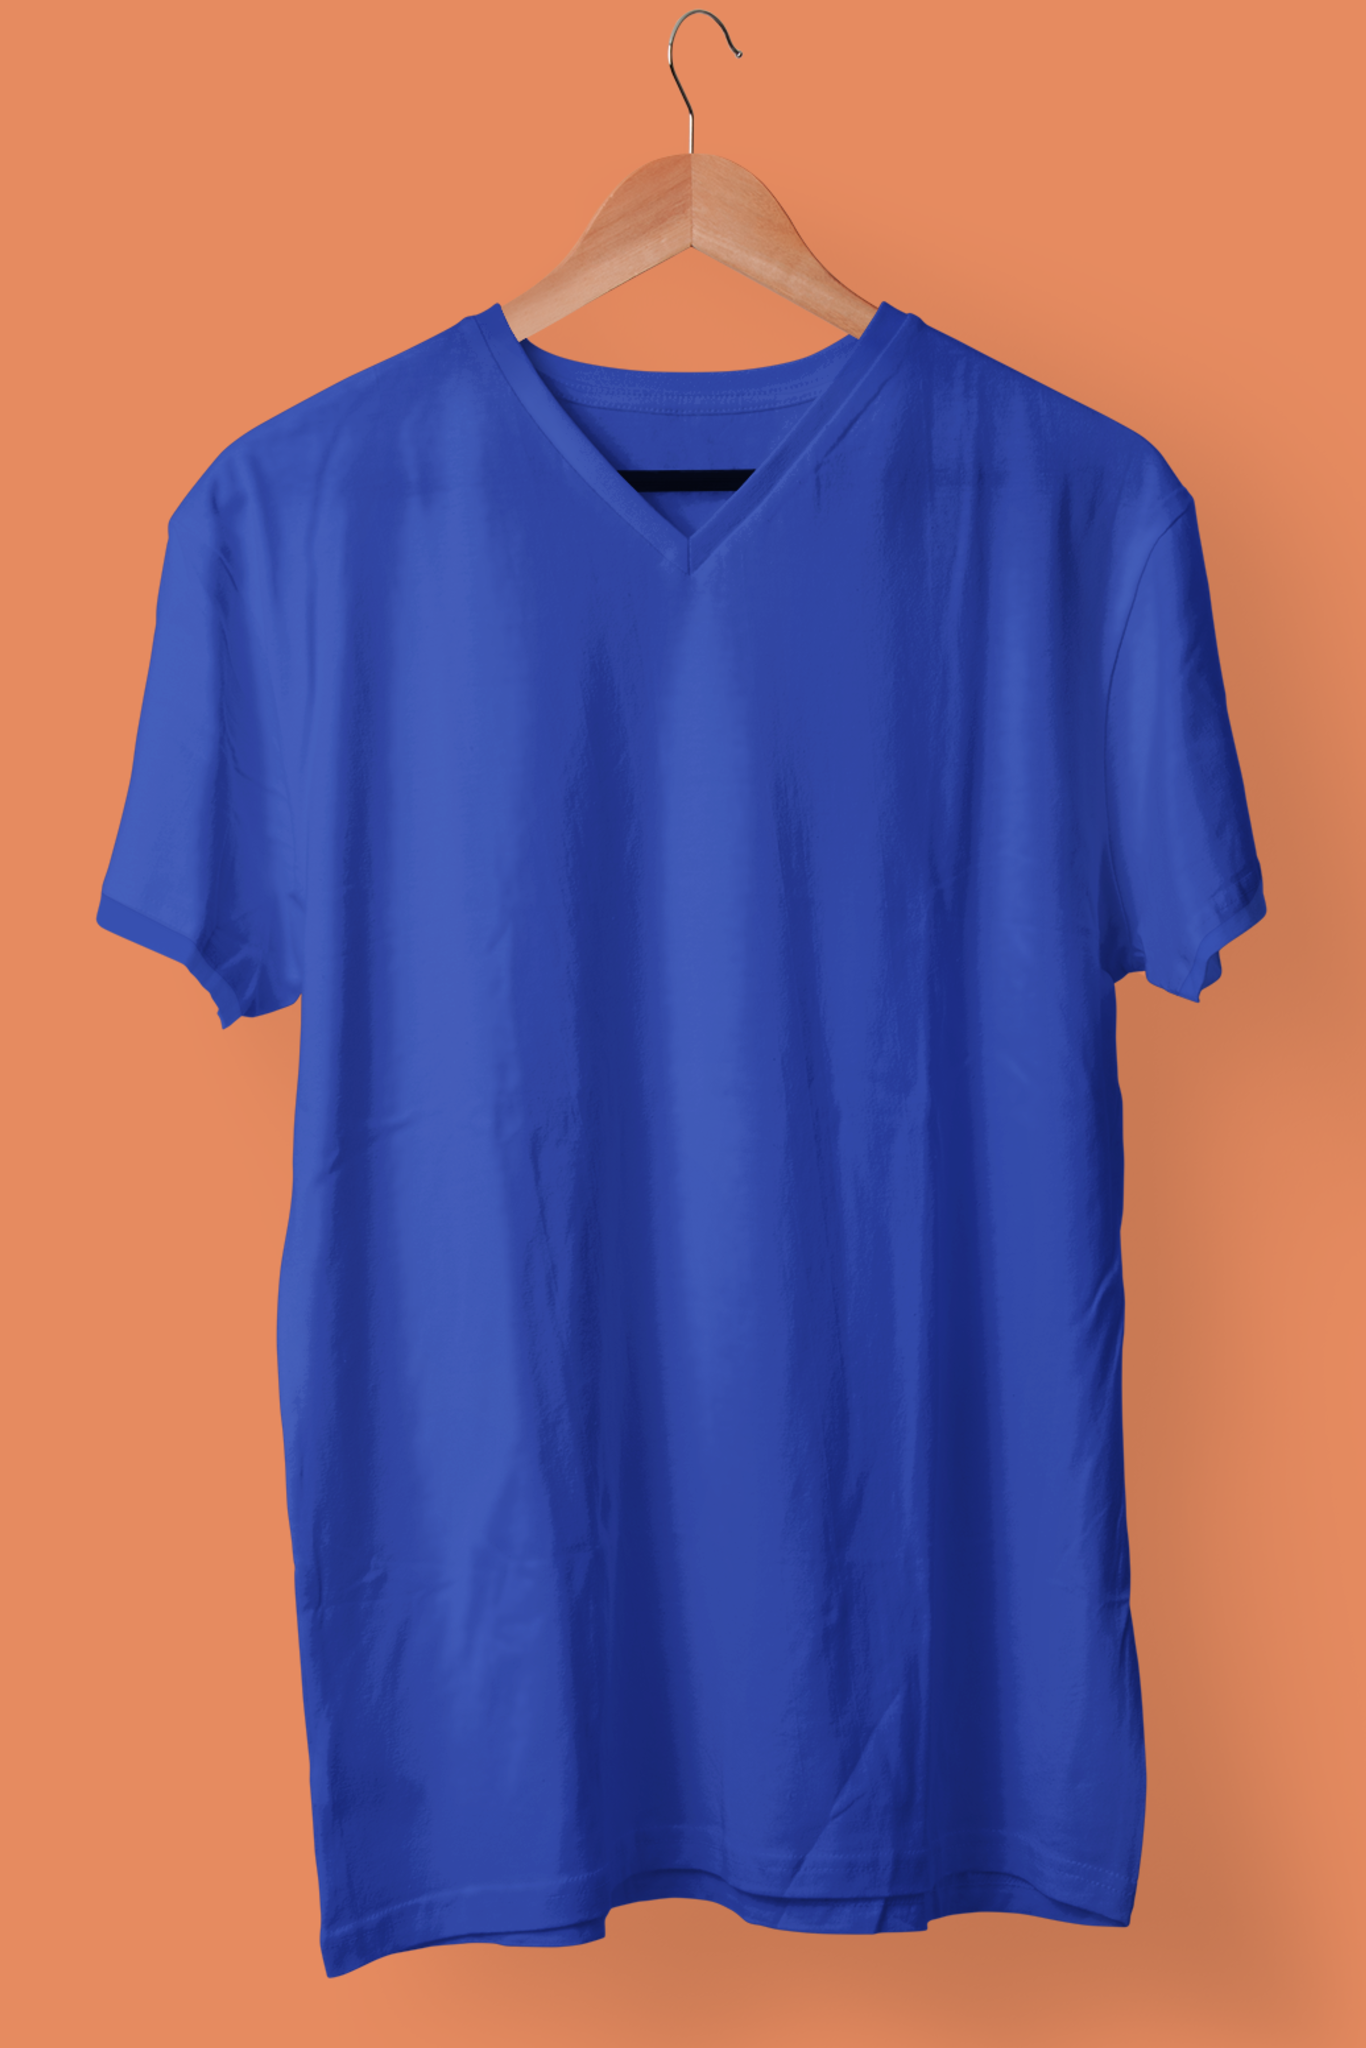 Men's V-Neck: Royal Blue T-Shirt